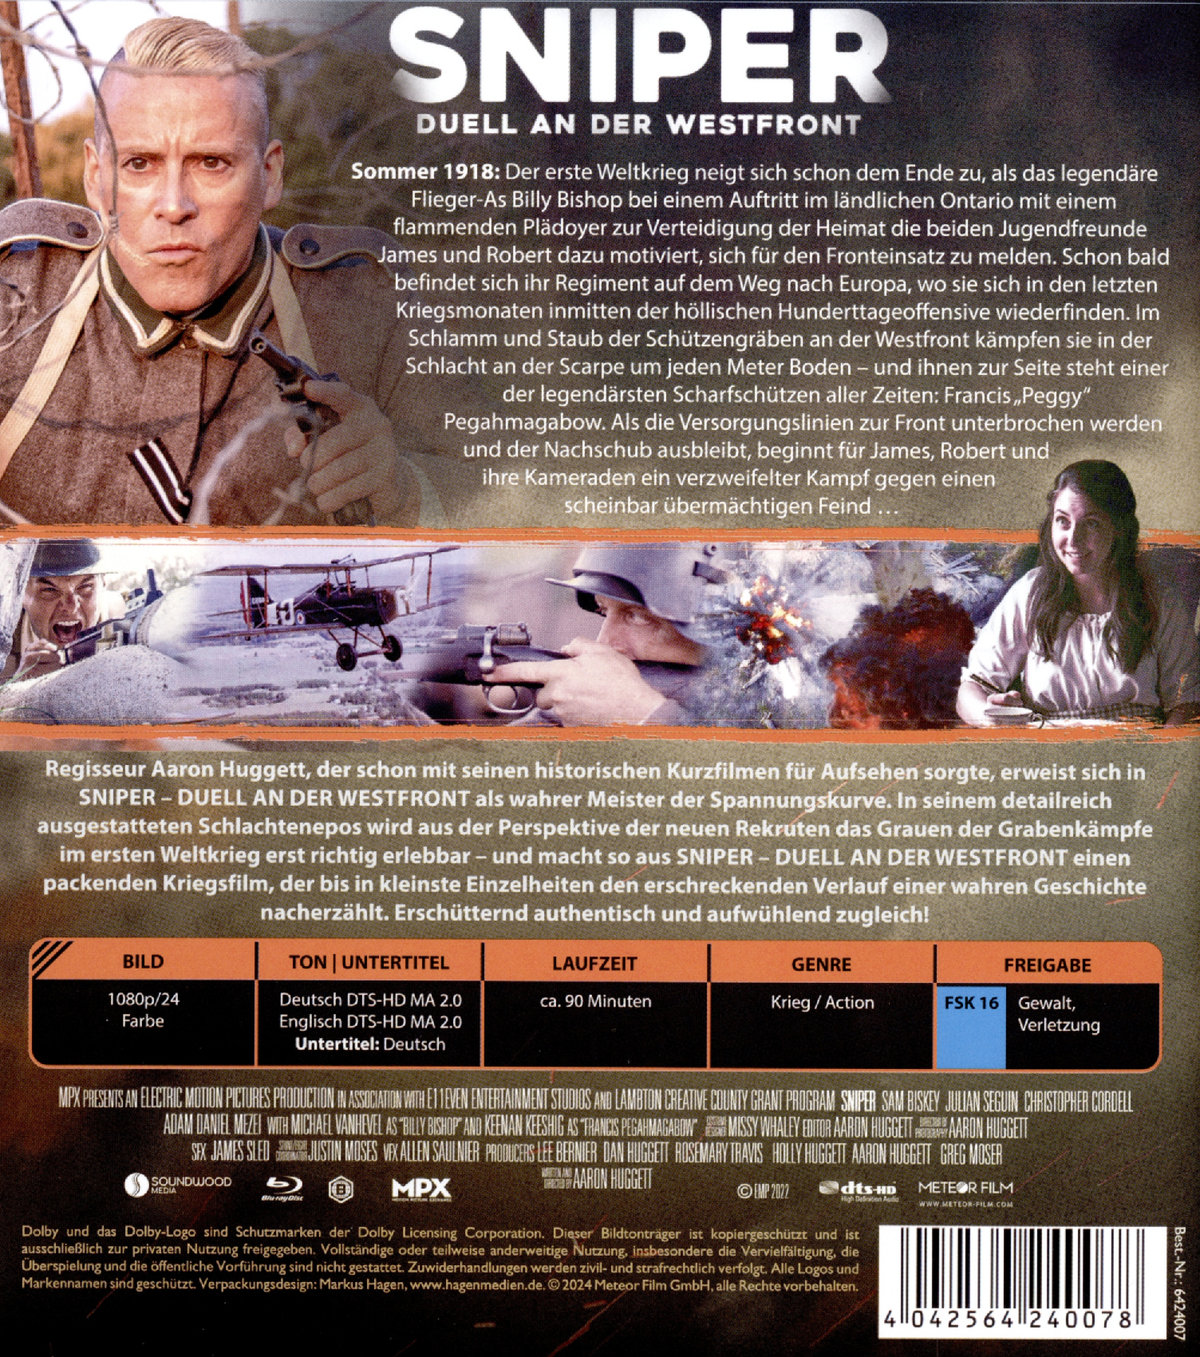 Sniper - Duell an der Westfront  (Blu-ray Disc)